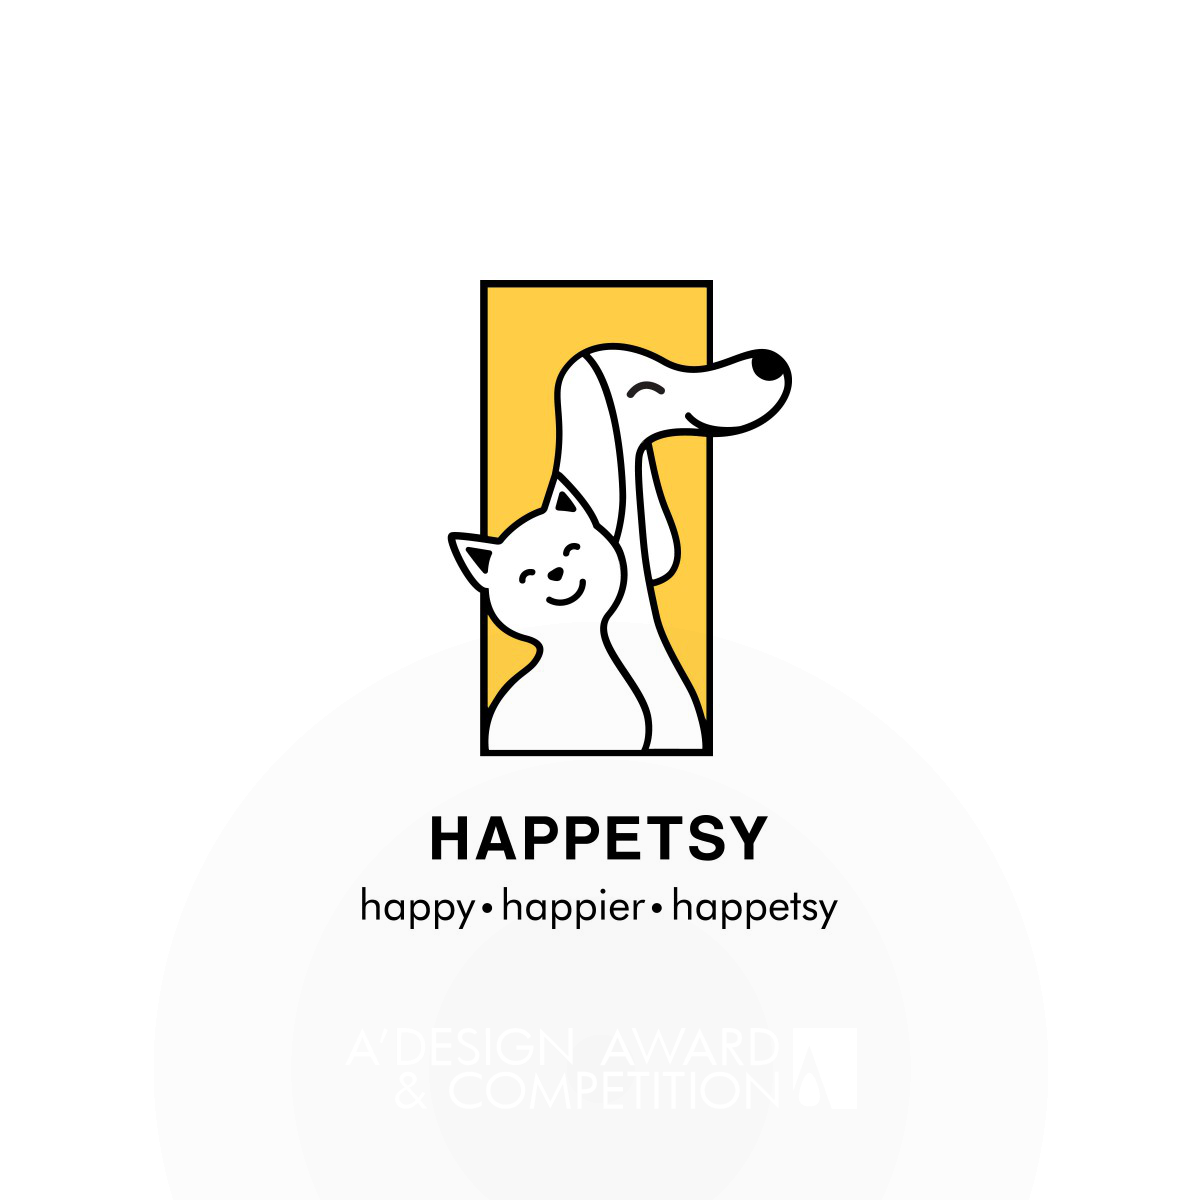 Happetsy: Un juego de diseño retro-moderno que evoca emociones positivas